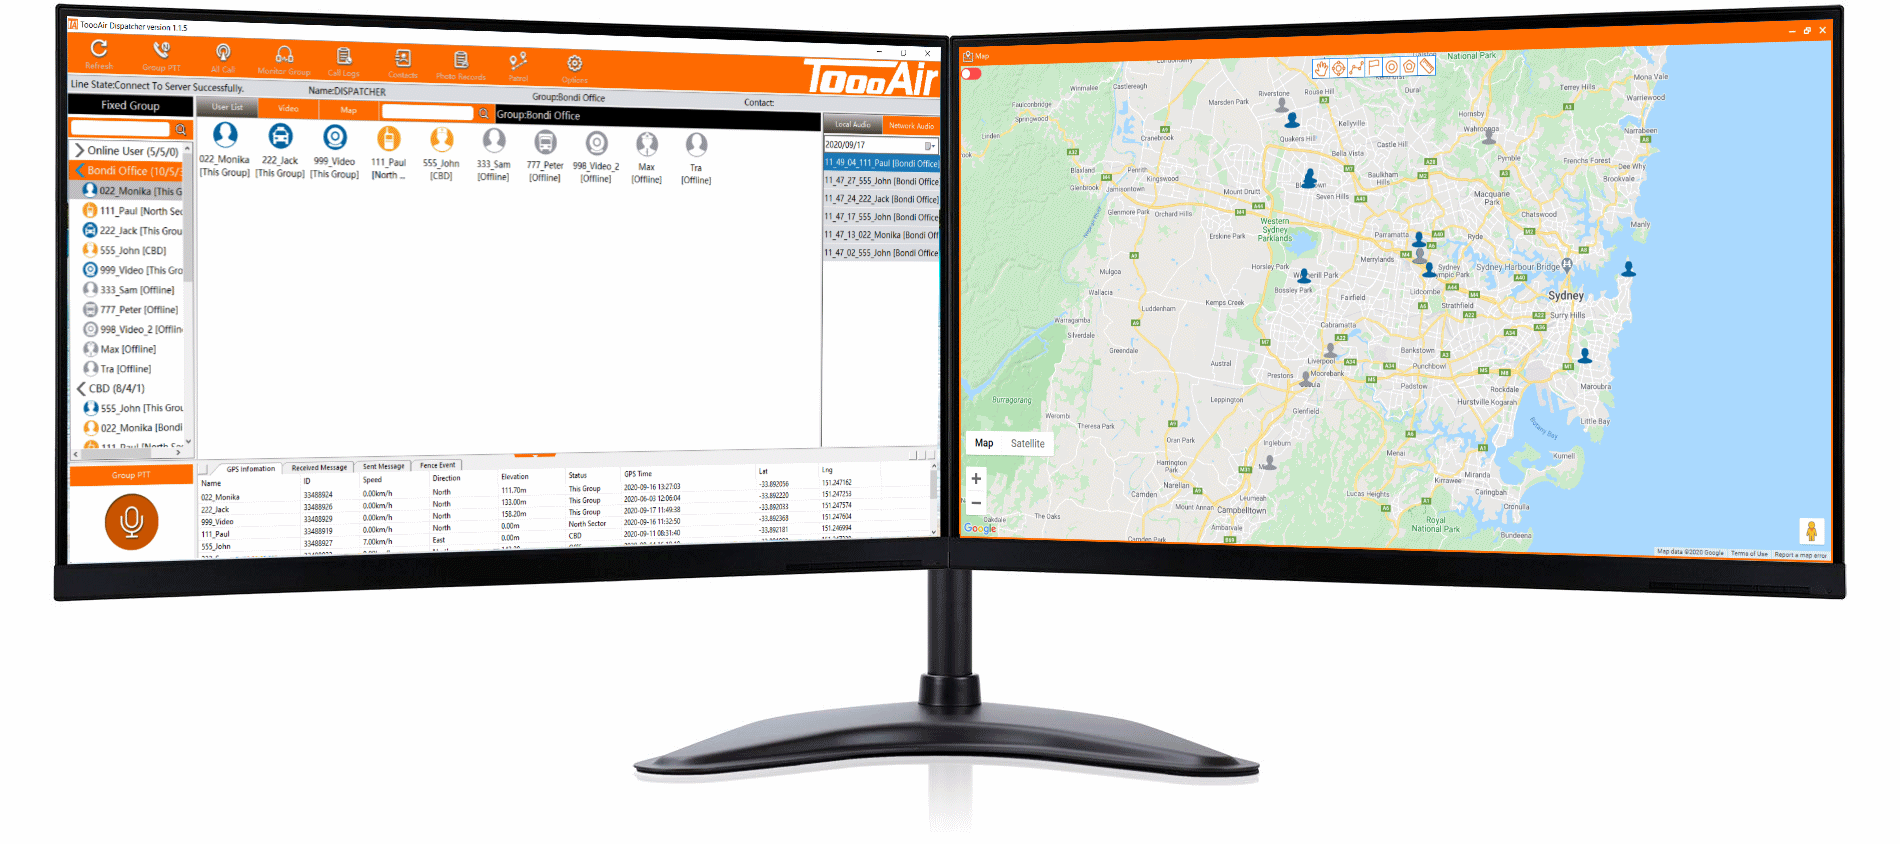 Dispatcher Software. The user interface of the ToooAir-PTT.